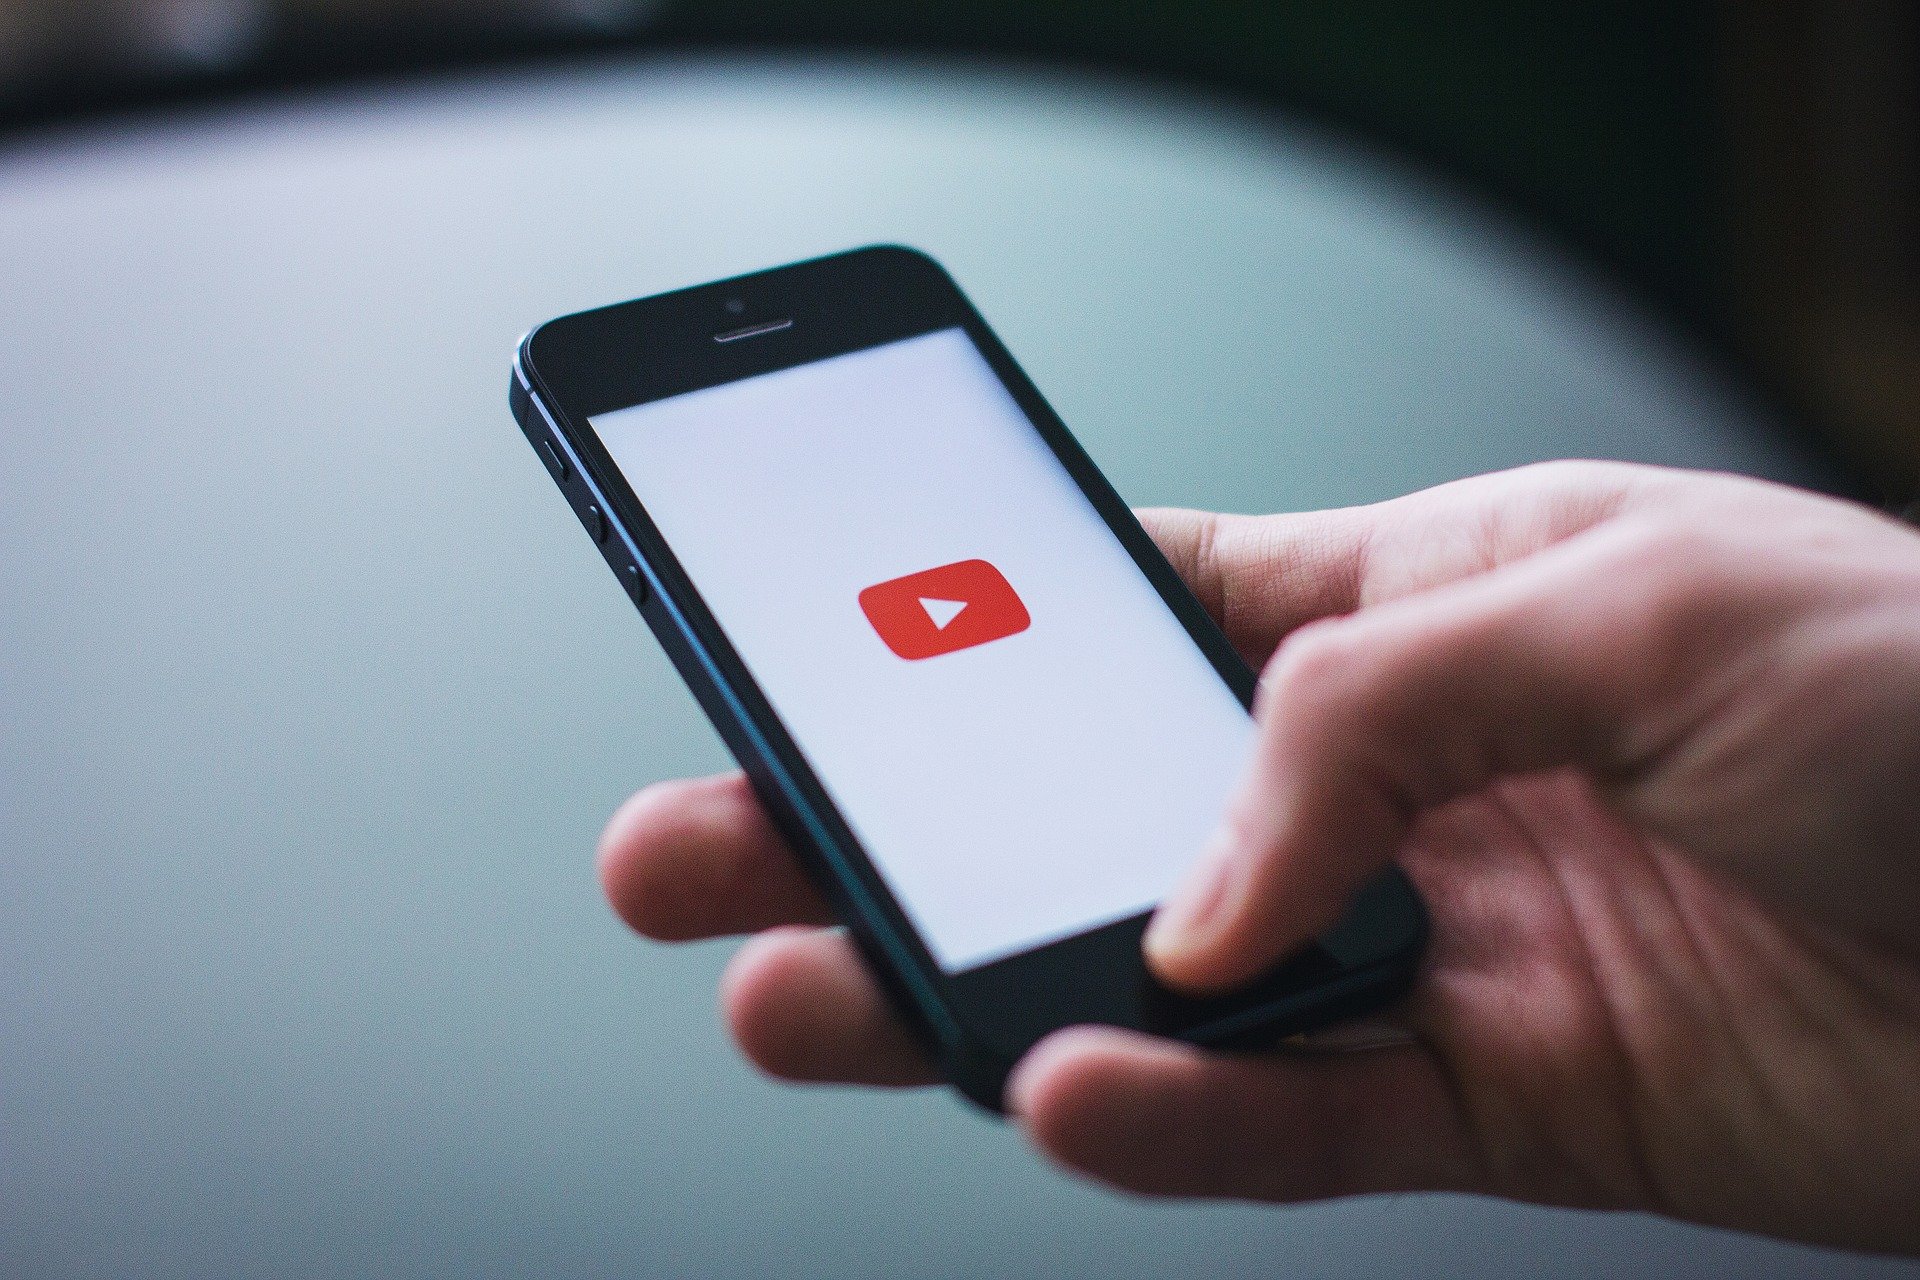 ¿Quiere Convertir YouTube a WebM? Aquí Hay 8 Convertidores que le Ayudarán